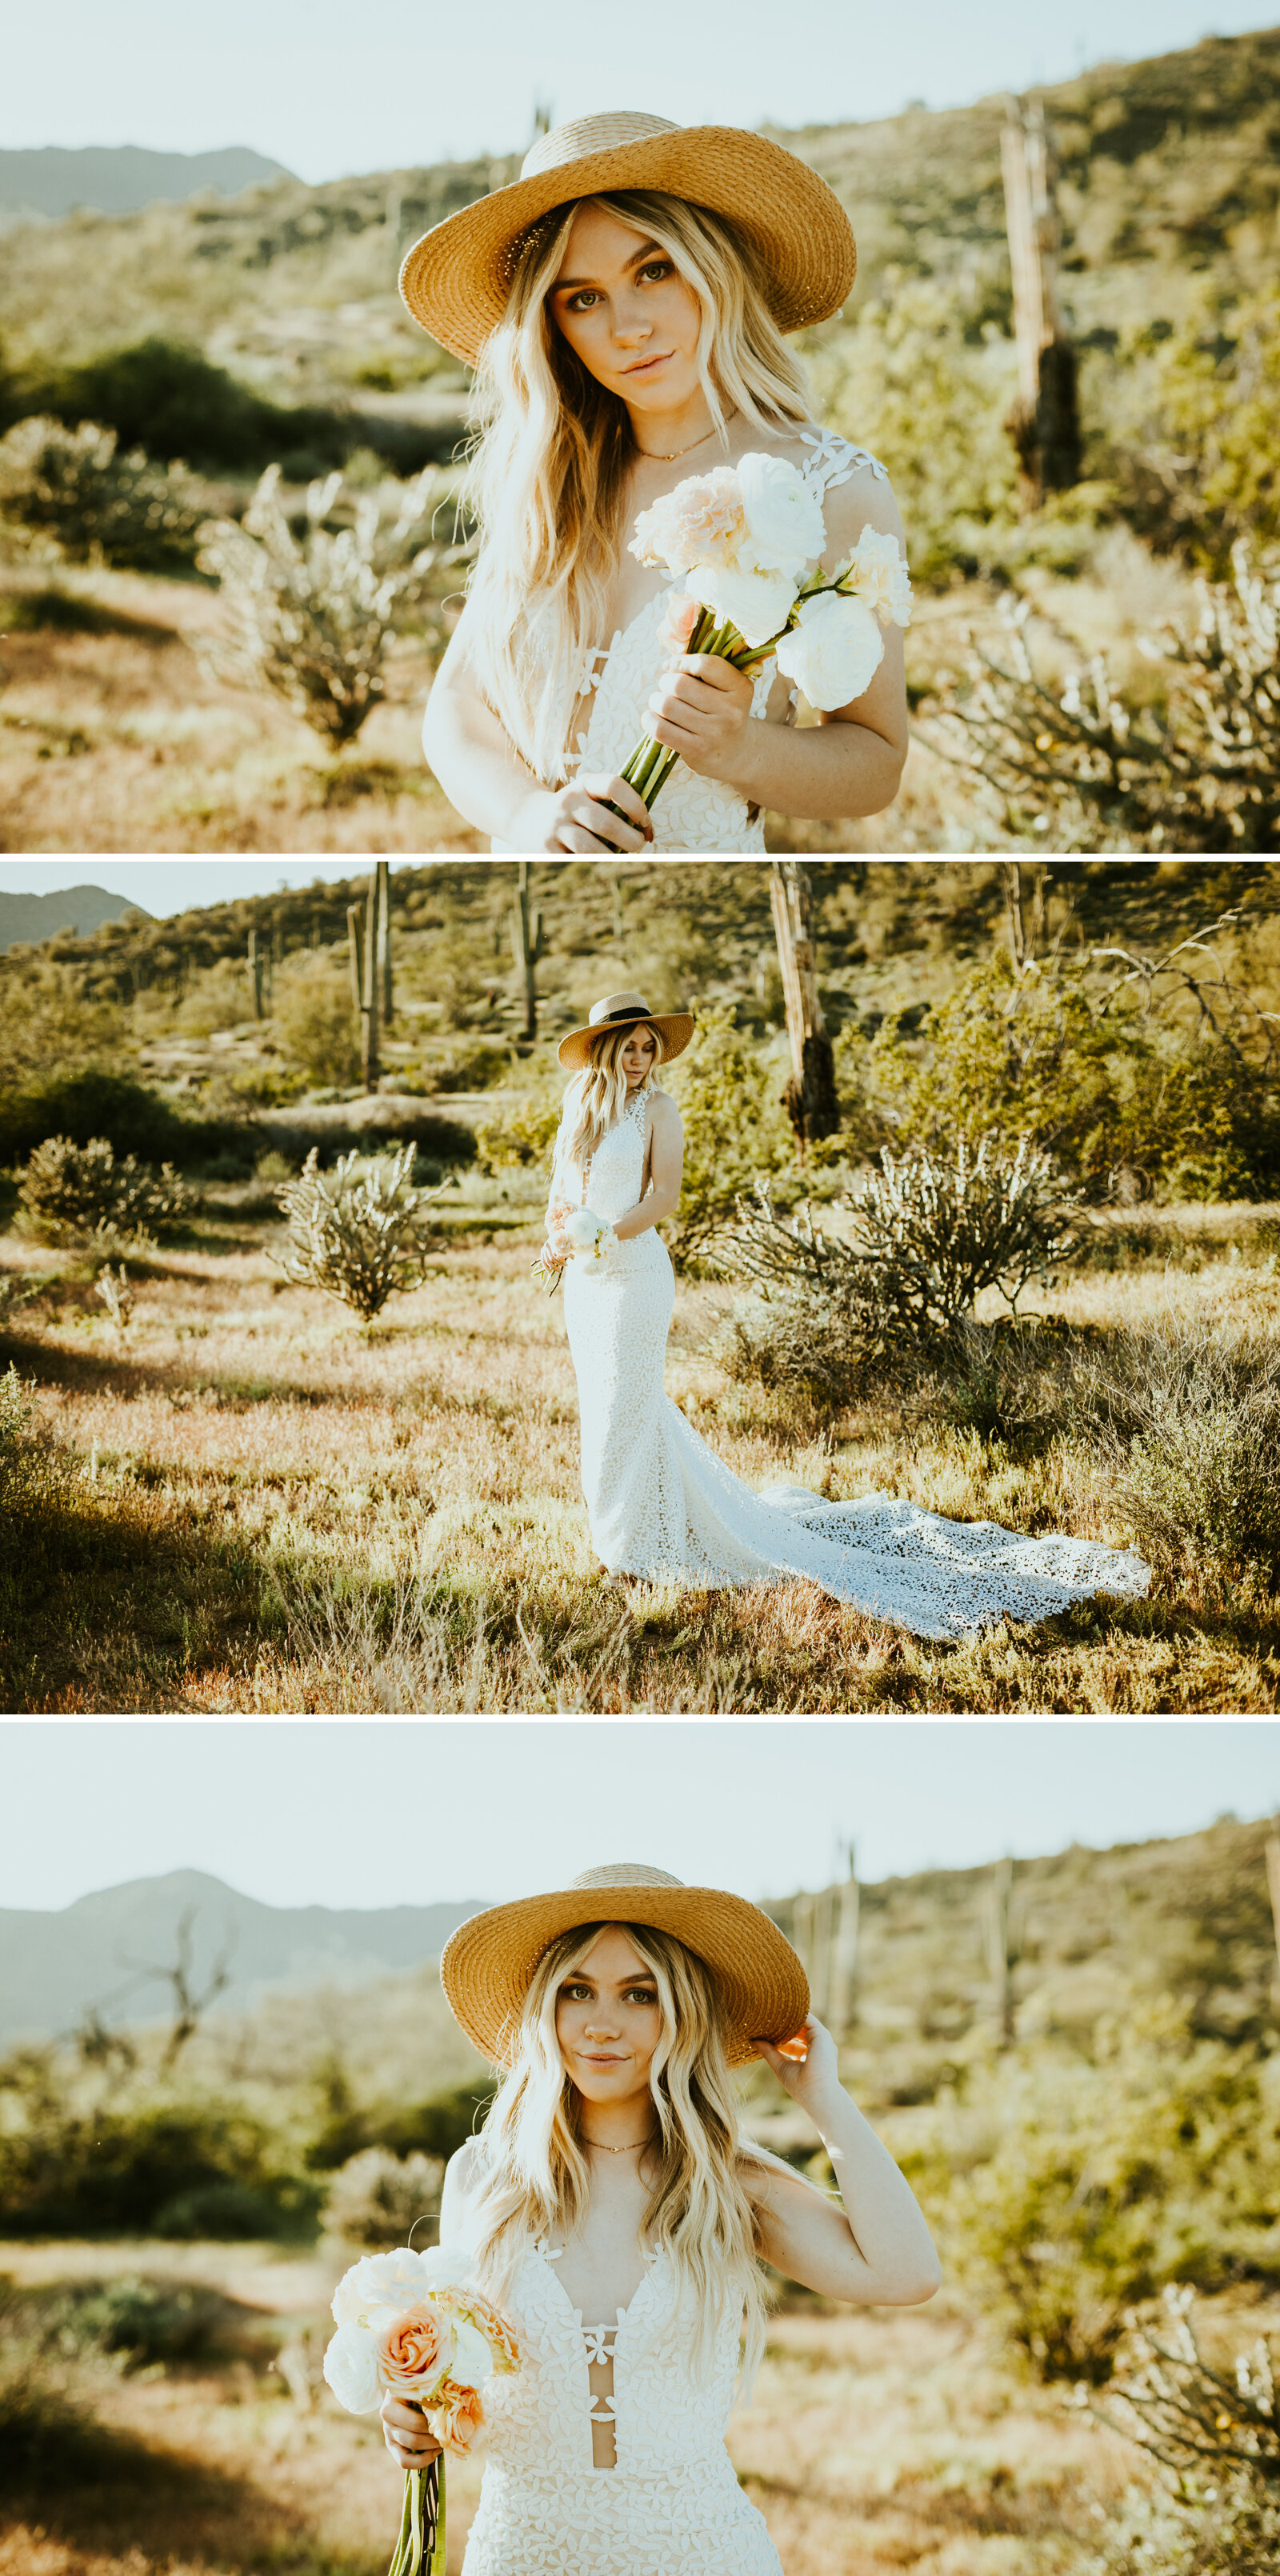 Salt River Mesa Arizona Wedding photos styled shoot bridemaids dresses arizona wedding party photos boho bride bridal portrait oufit inspo desert shoot wedding dress.jpg